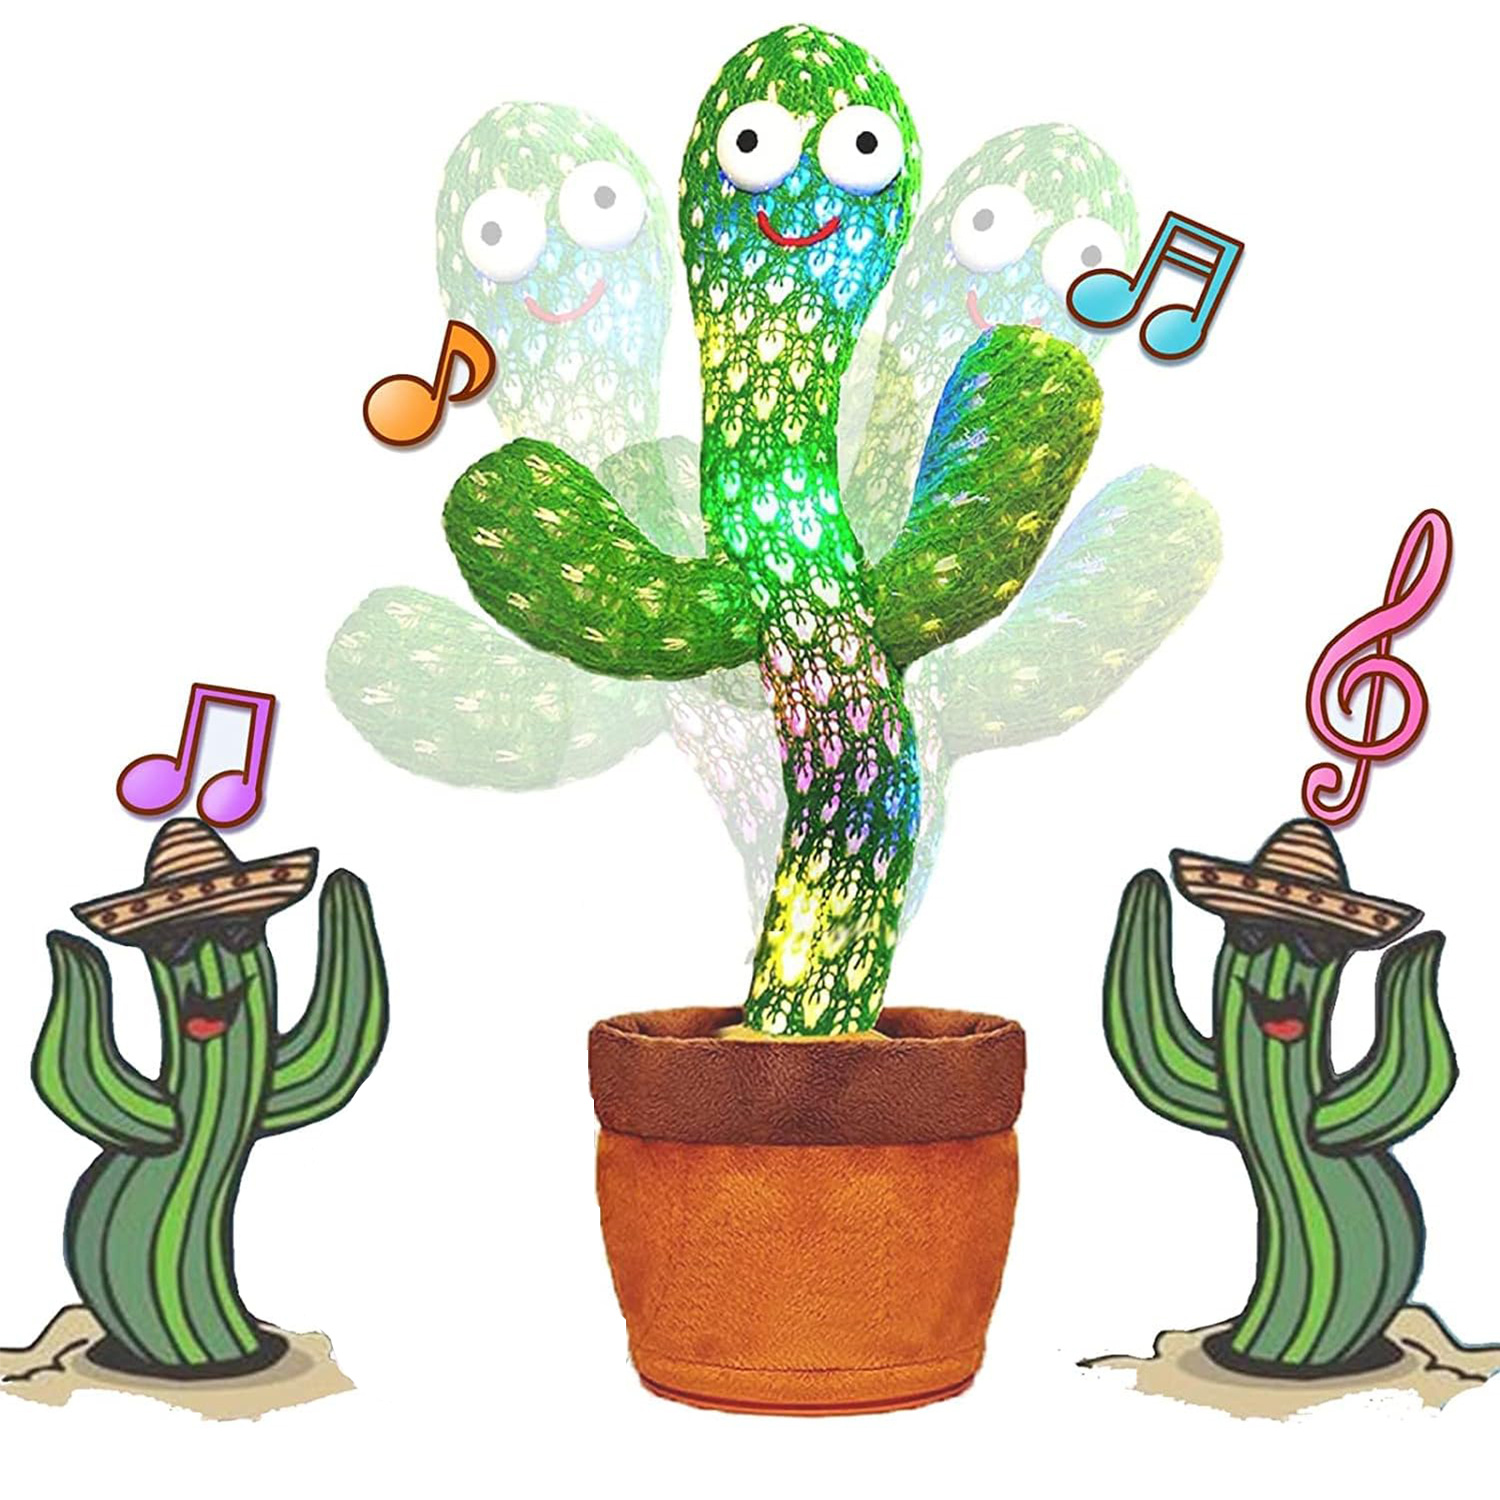 Juguete De Cactus Bailarín, Juguete De Cactus Parlante Y Cantante